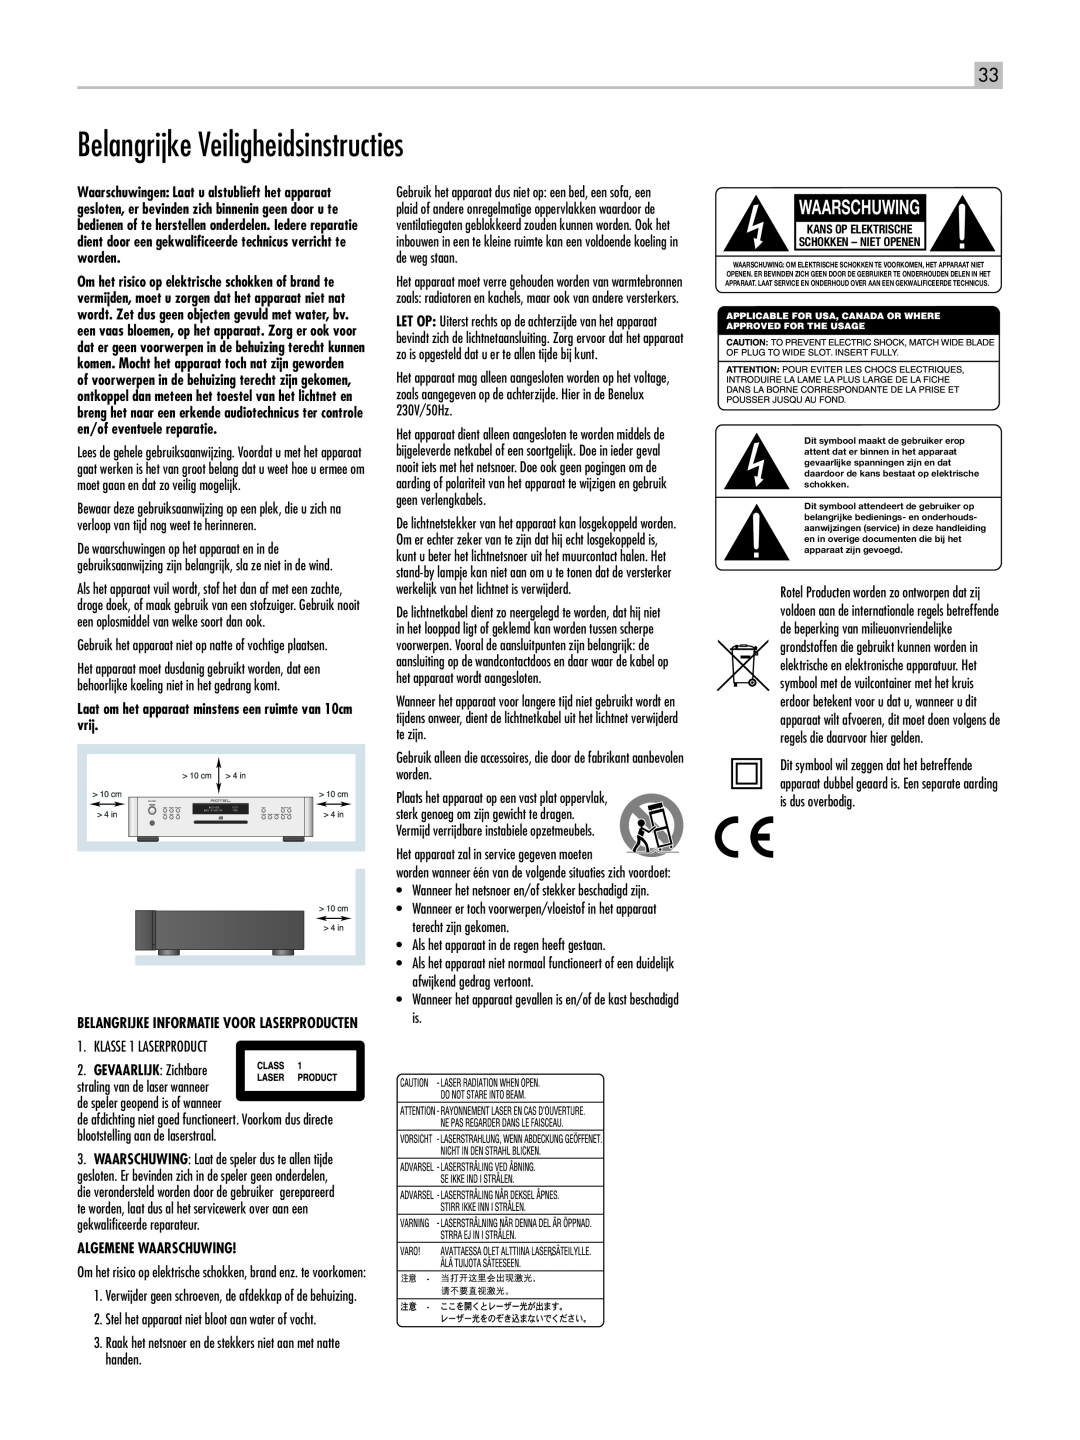 Rotel RCD-1520 owner manual Belangrijke Veiligheidsinstructies, Waarschuwing, Belangrijke informatie voor laserproducten 